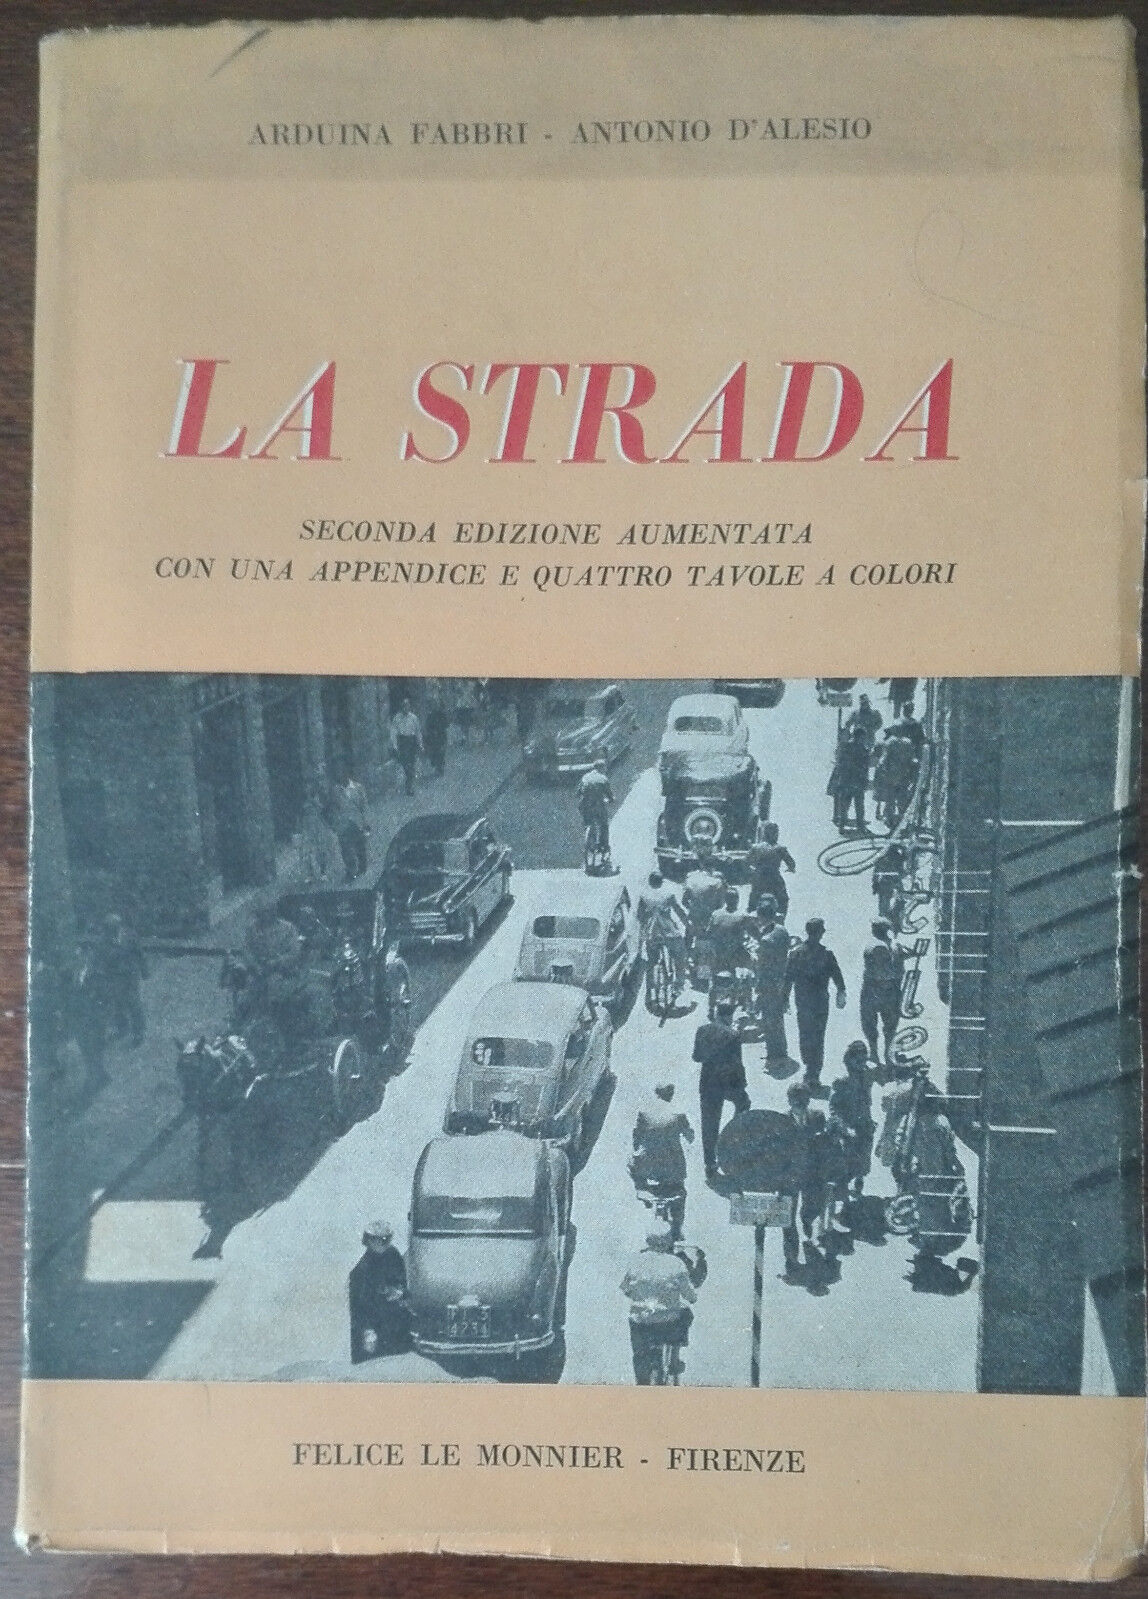 La strada - Arduina Fabbri, Antonio D'Alesio - Felice Le Monnier,1956 - A